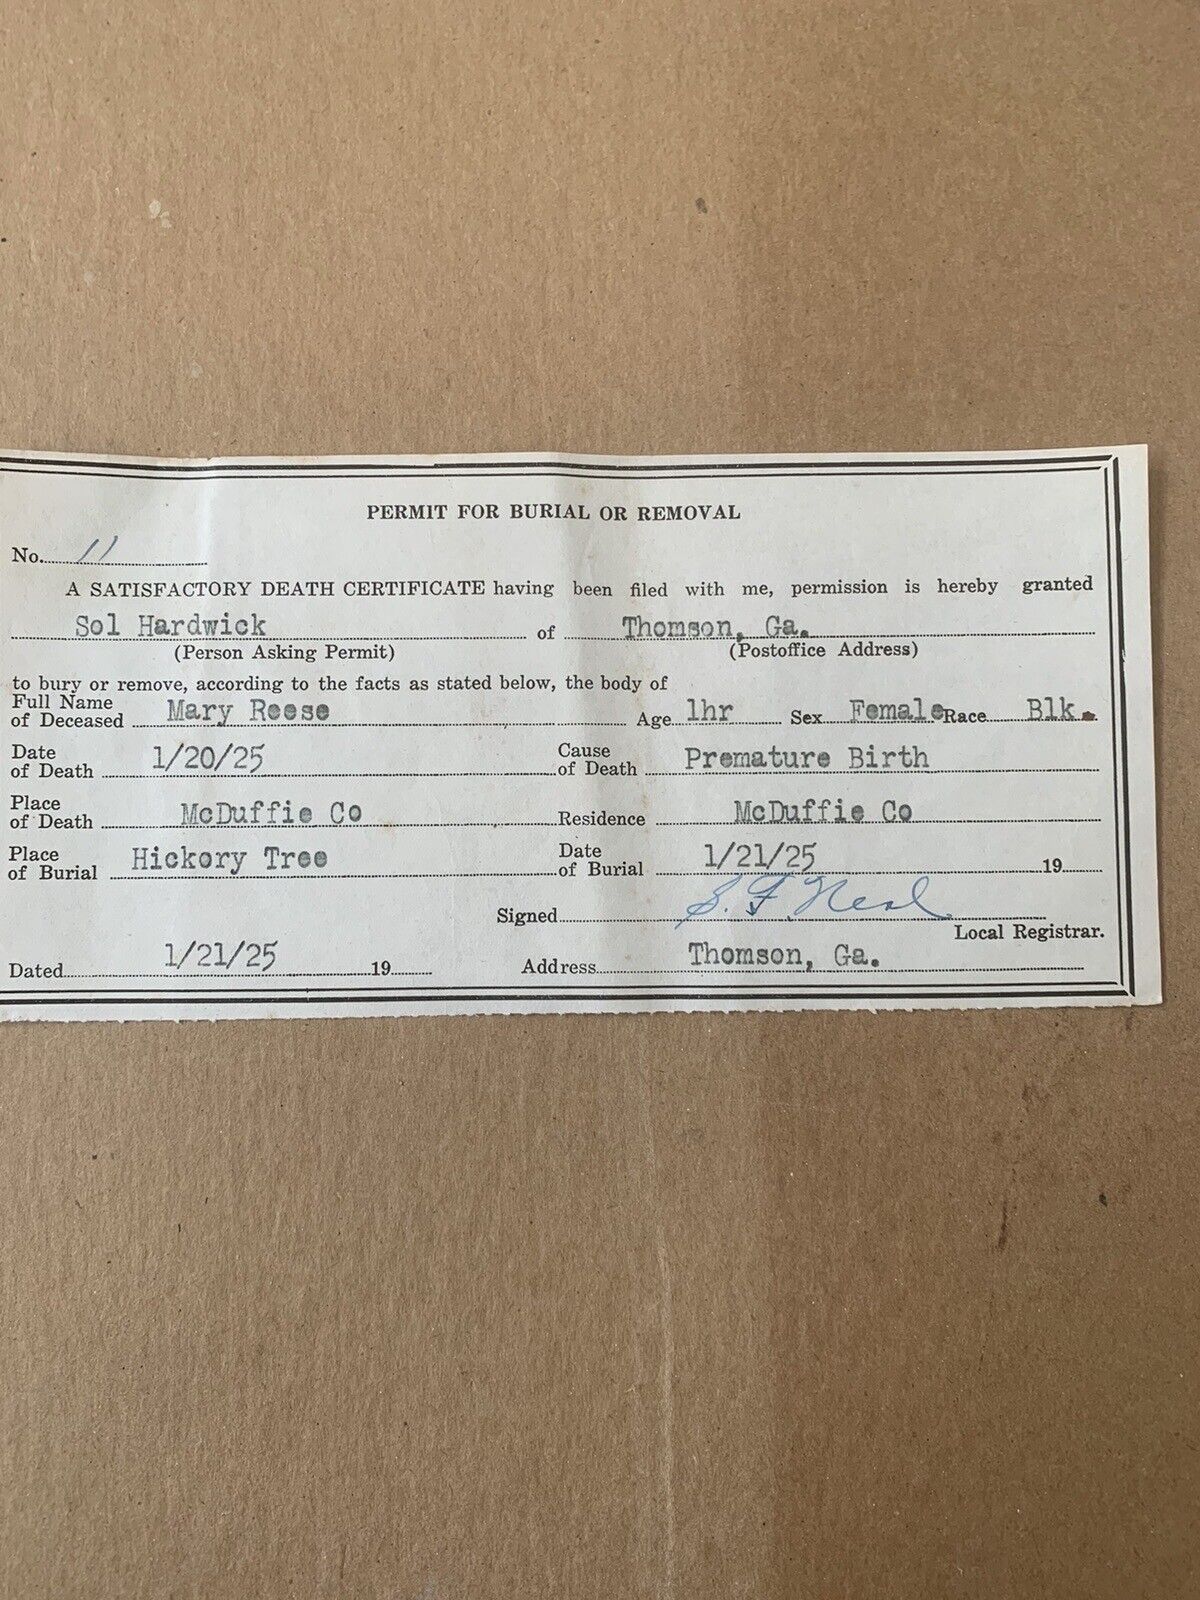 Permit For Burial Premature Birth Thomson Georgia 1925